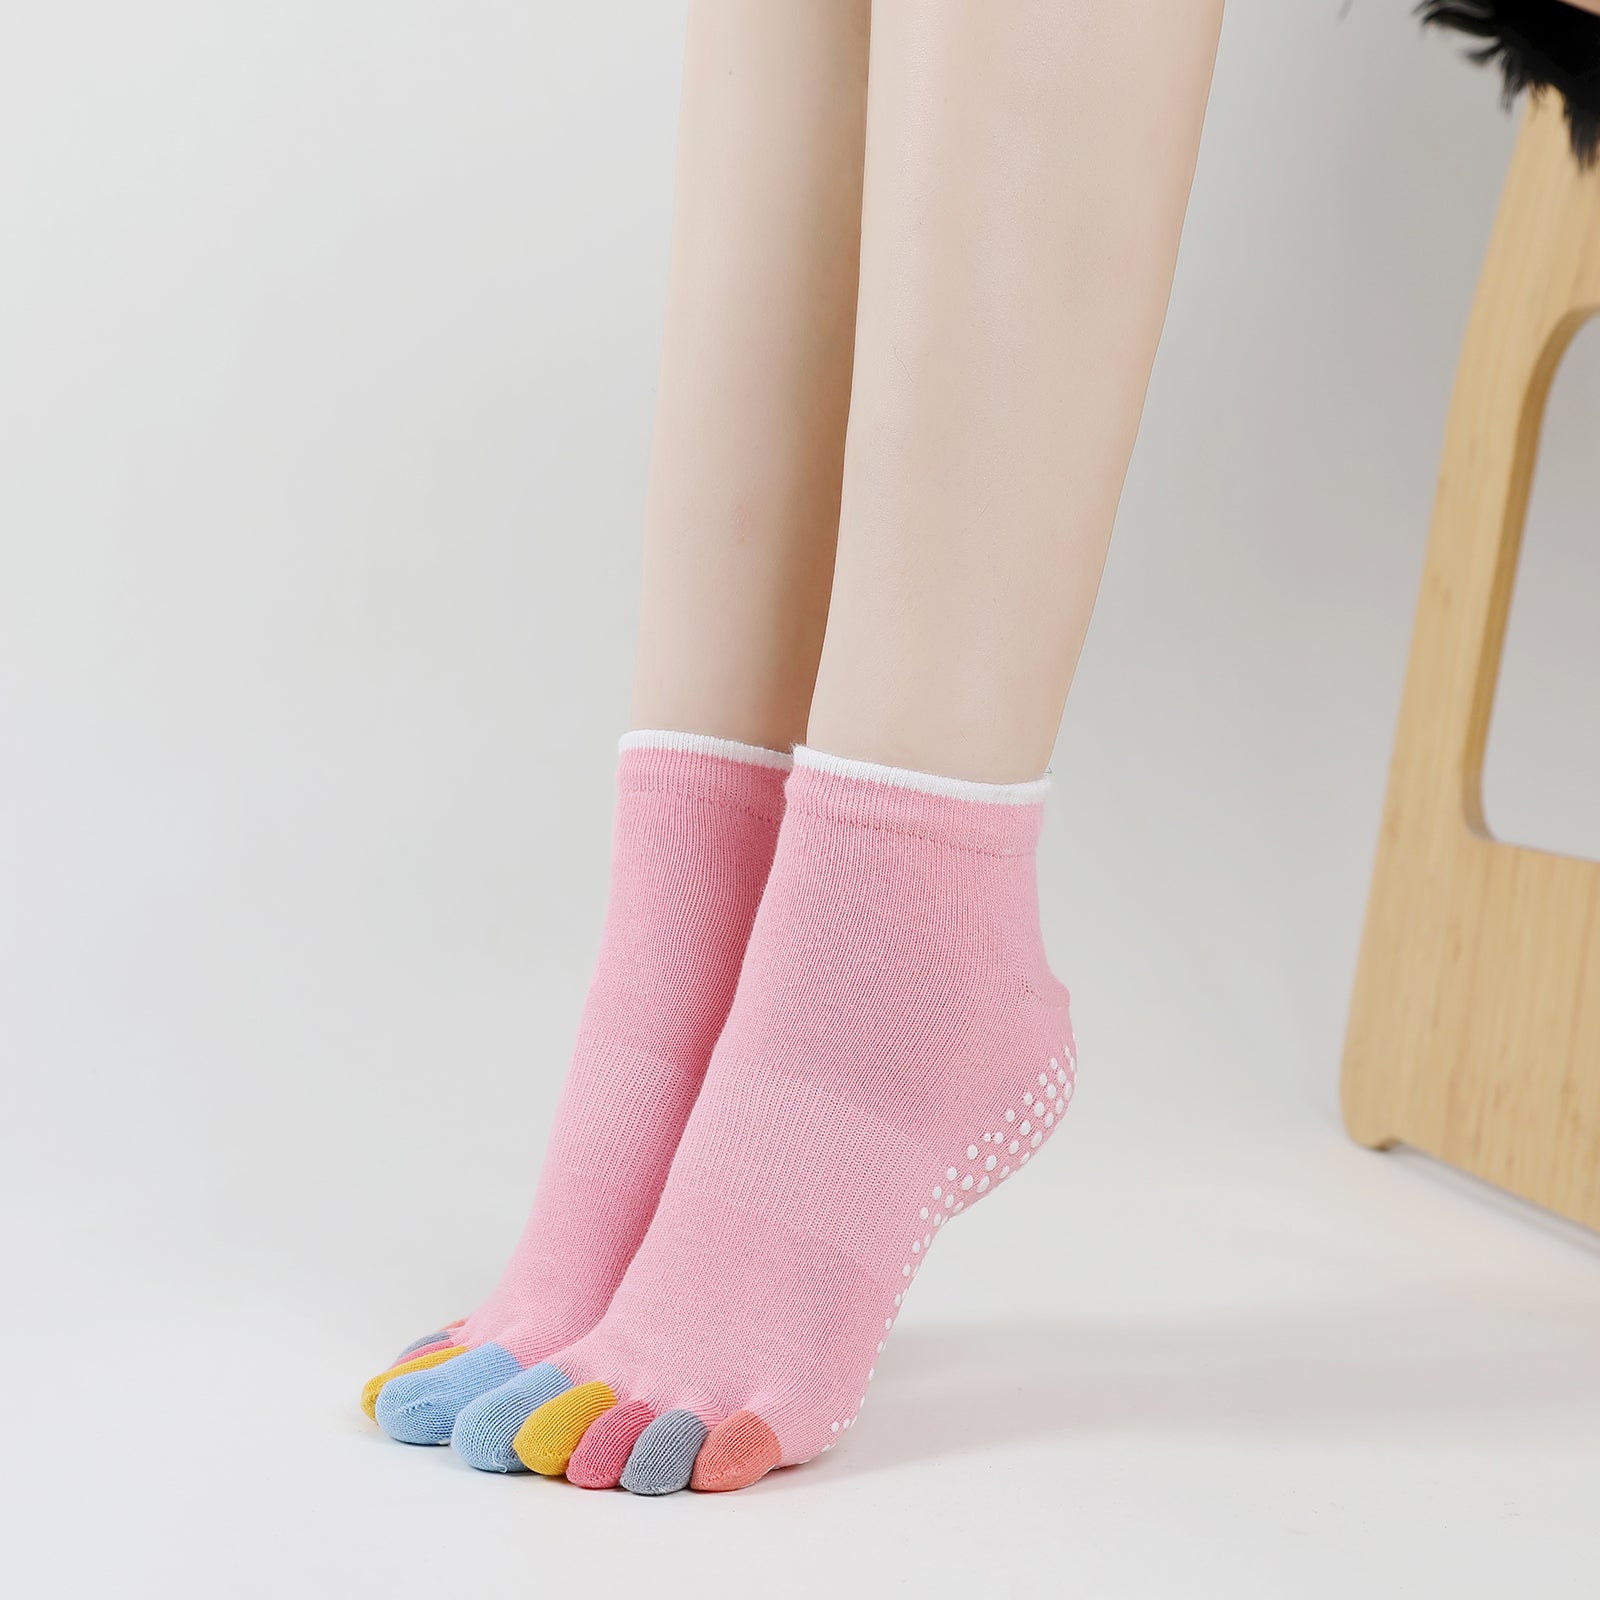 Artfasion Yoga Socks Women Non Slip Grip Socks Ankle Toe Socks for Ath